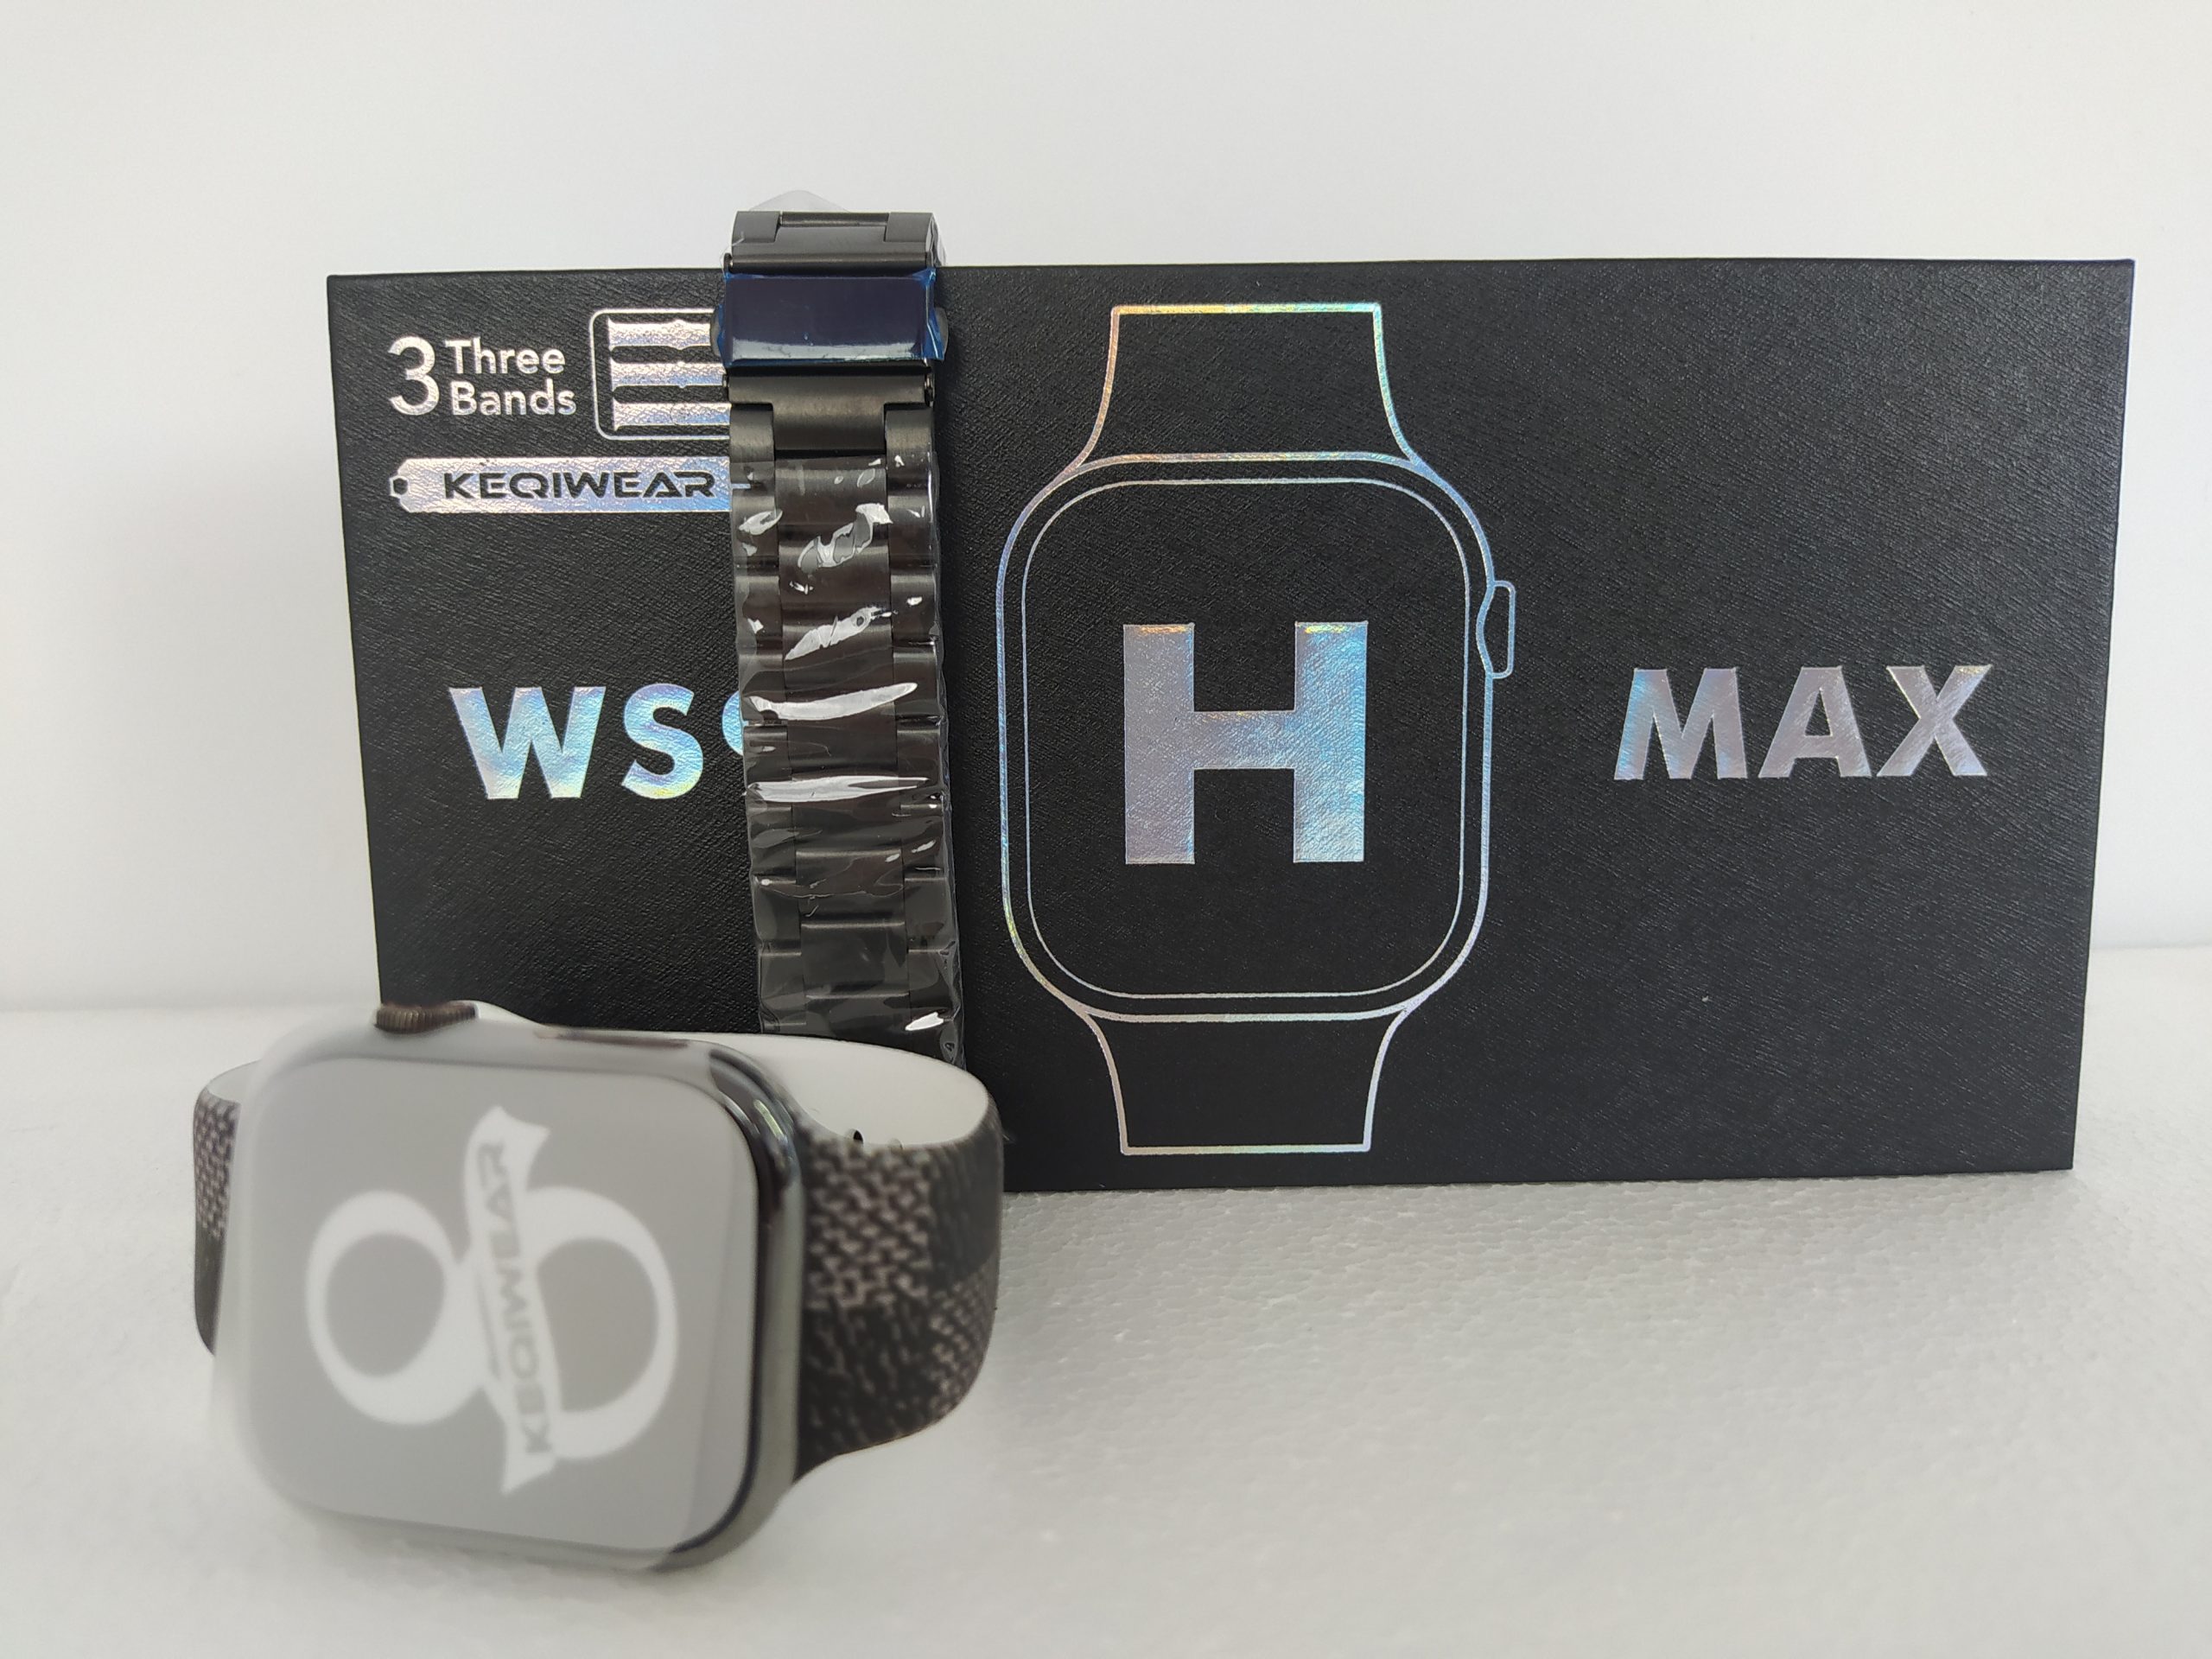 فروش ساعت هوشمند KEQIWEAR مدل WS92 MAX